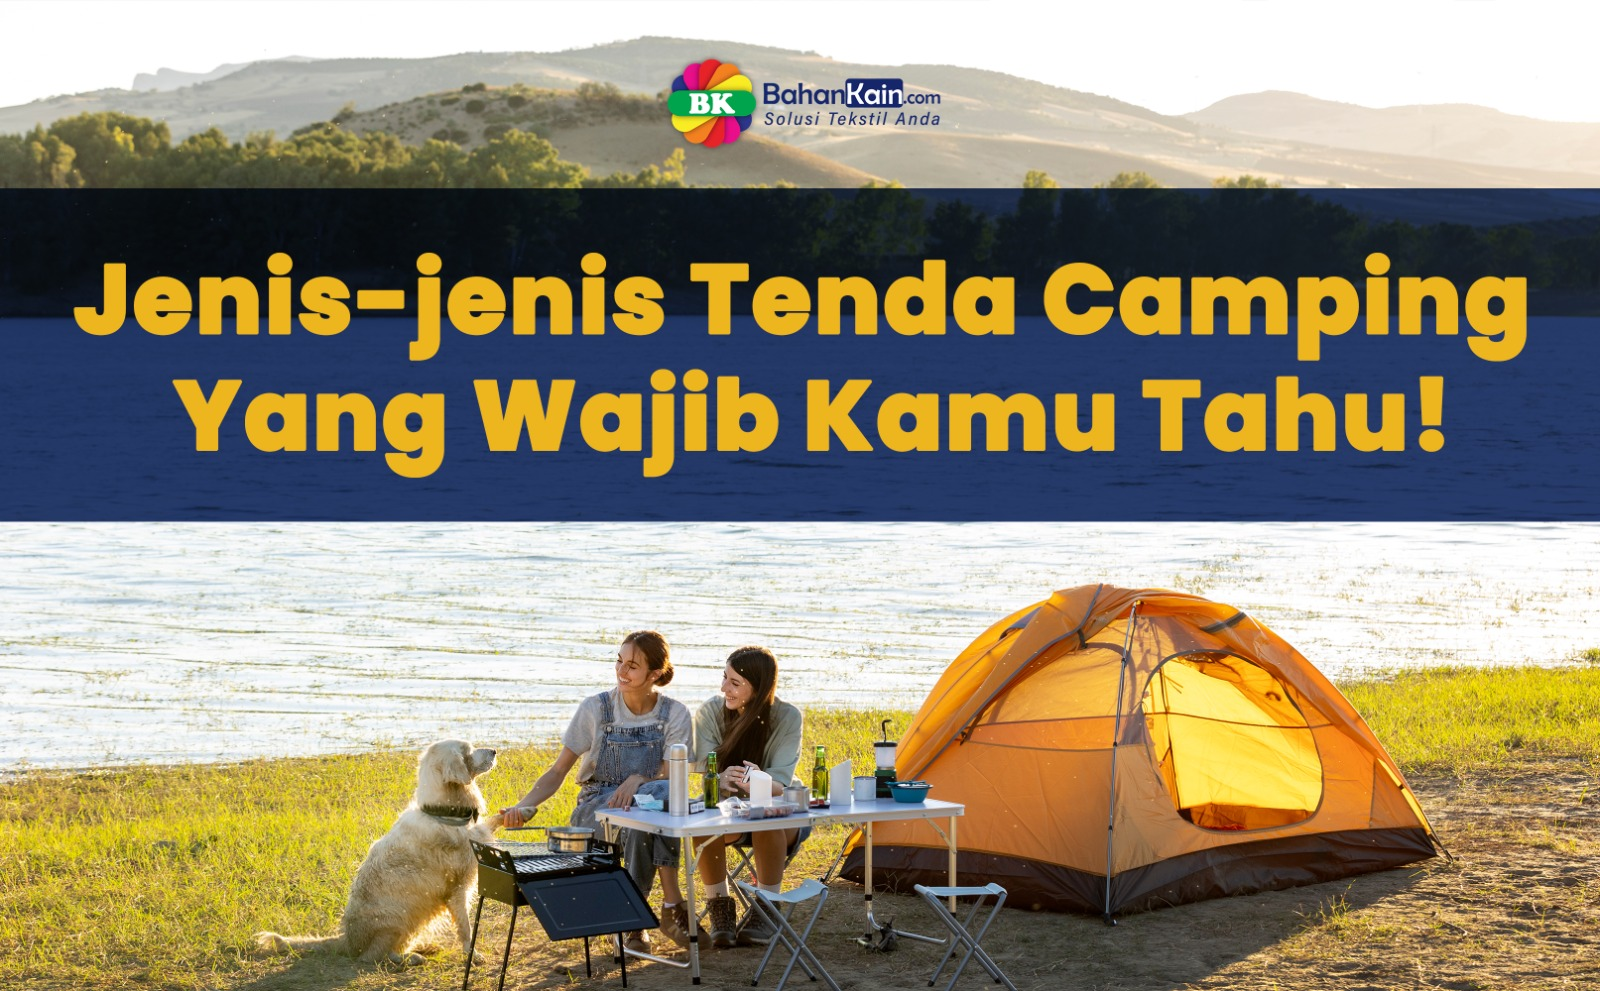 Jenis-jenis Tenda Camping Yang Wajib Kamu Tahu!